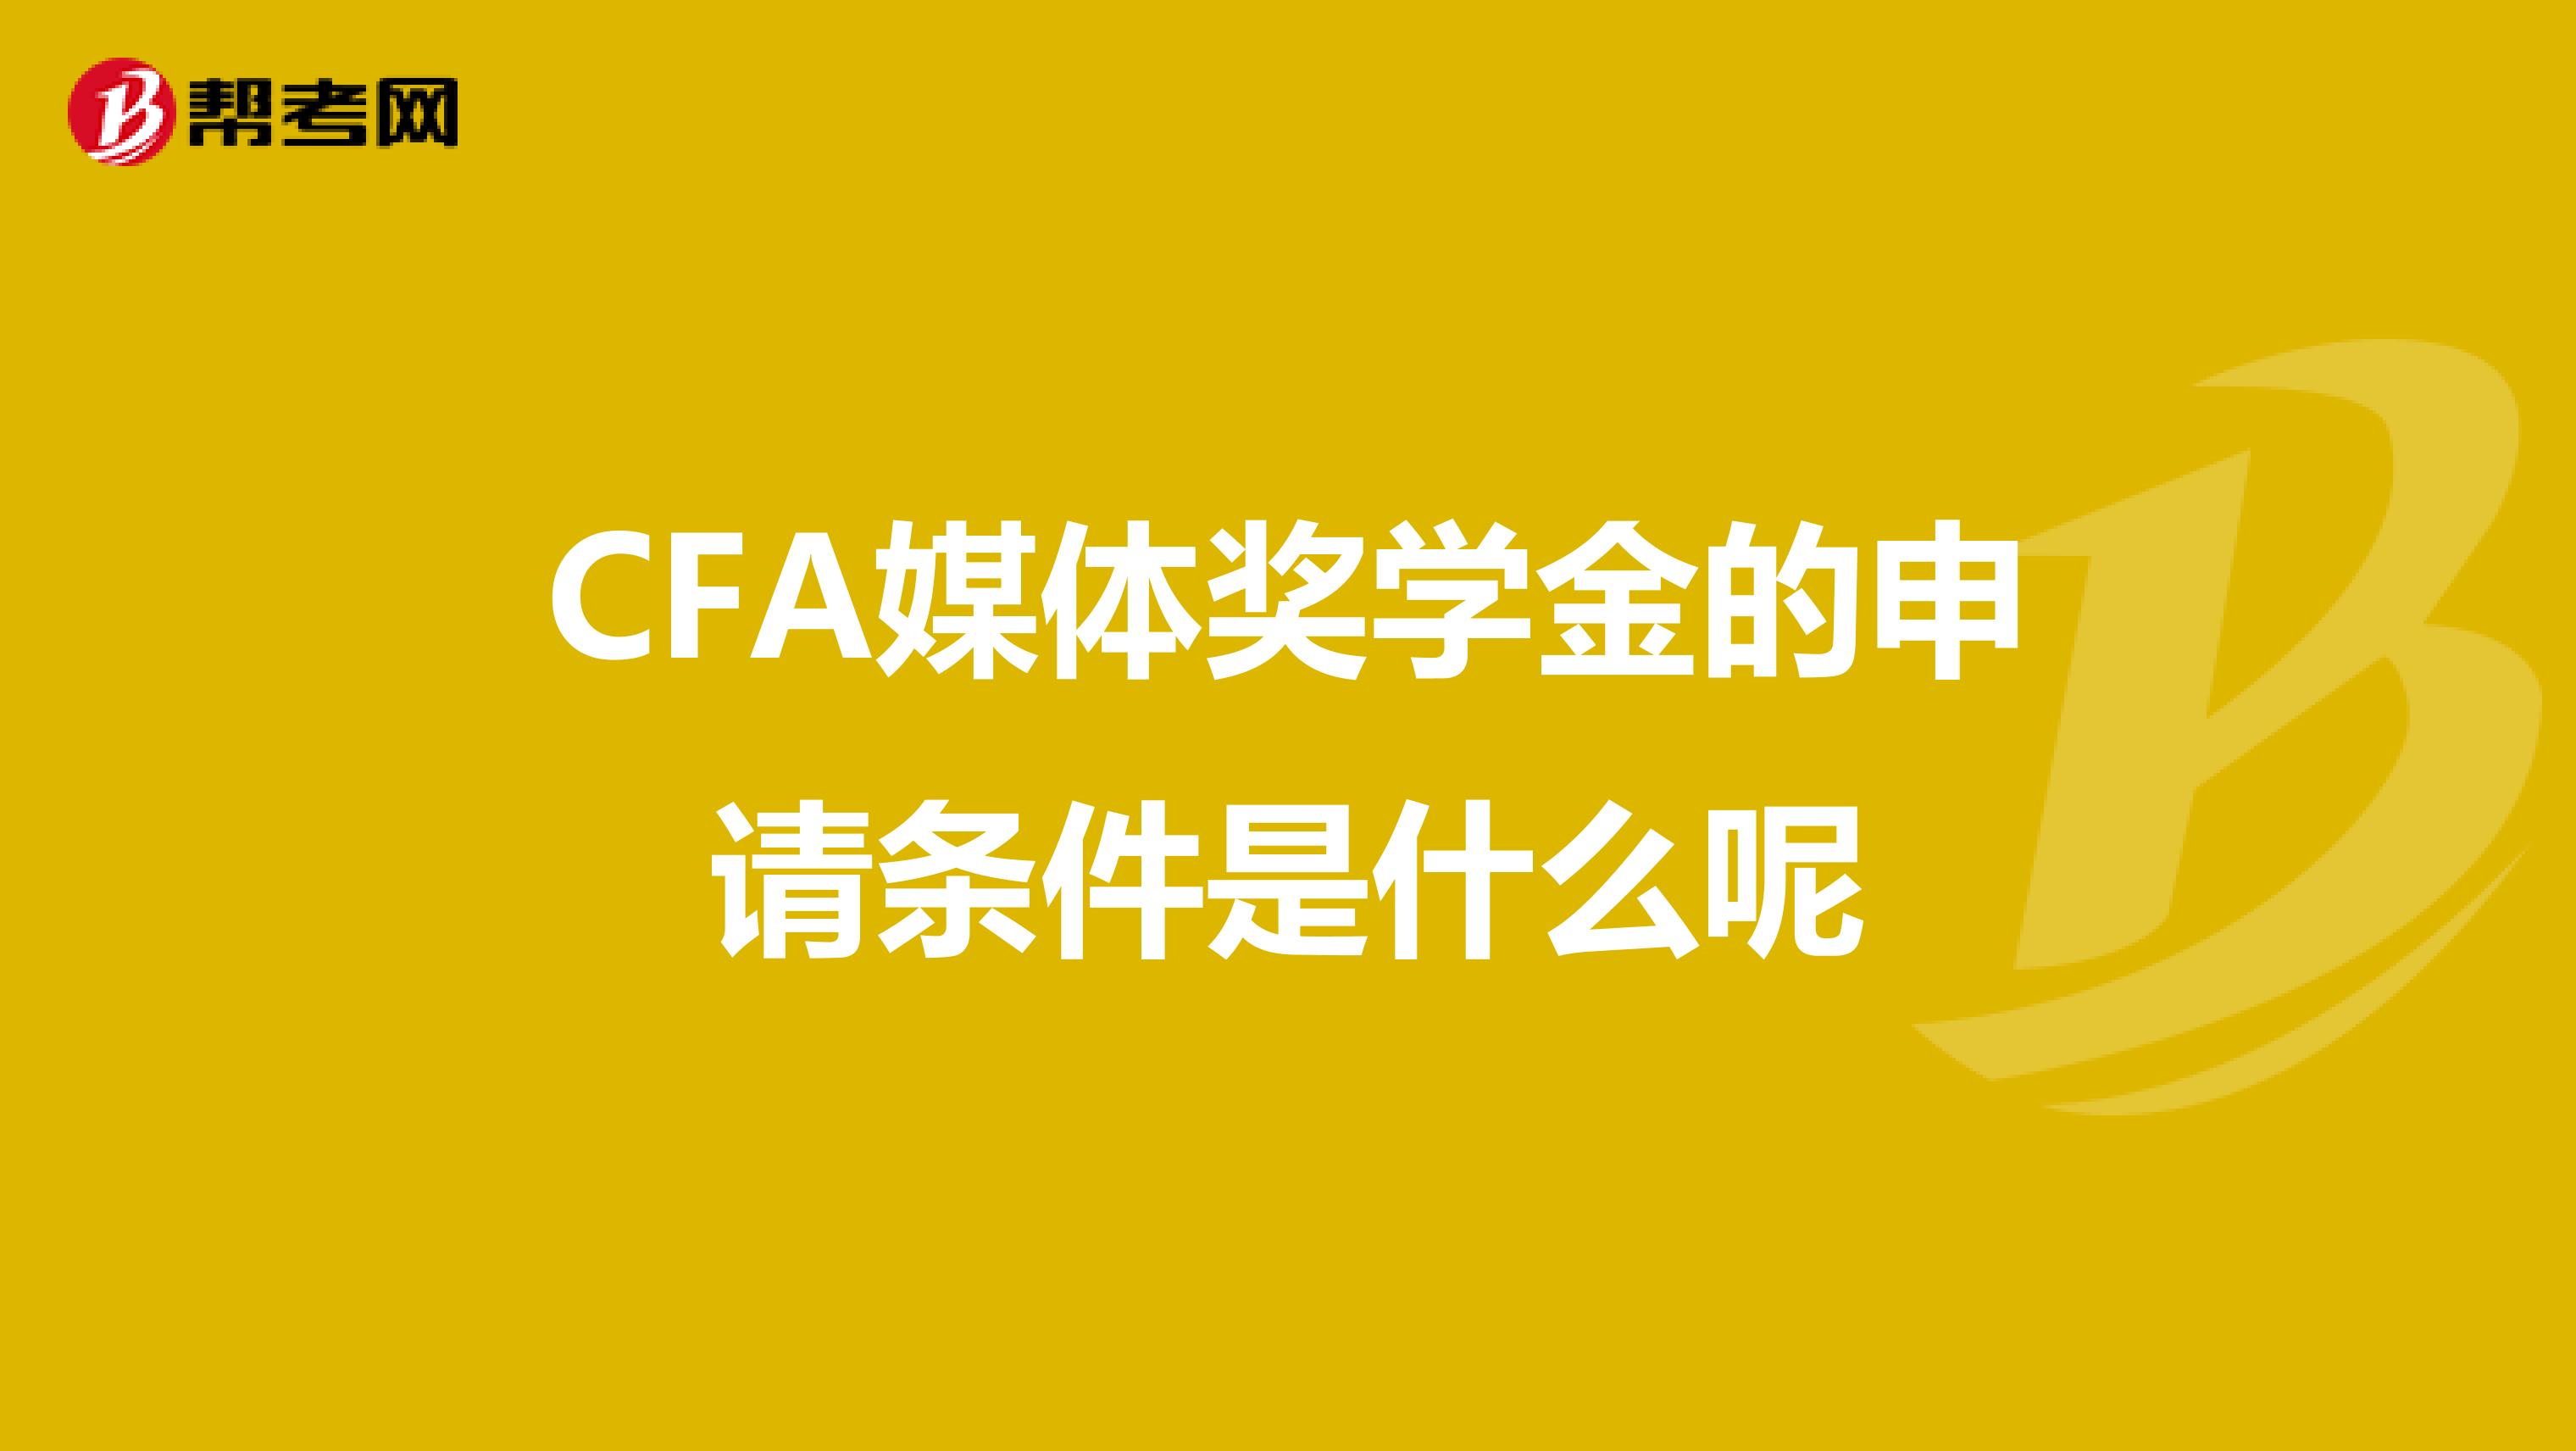 CFA媒体奖学金的申请条件是什么呢